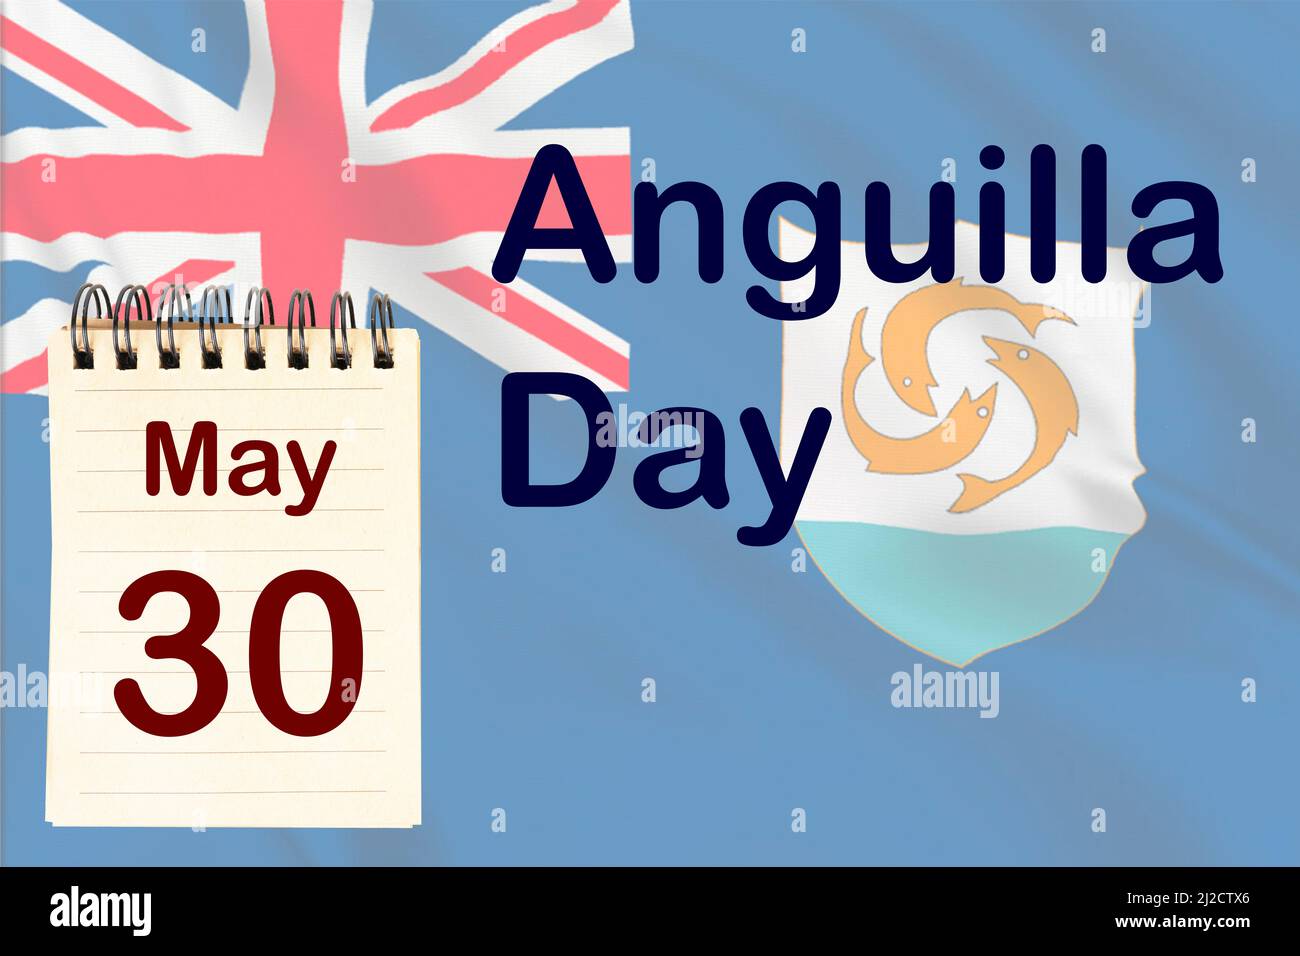 La célébration de la Journée Anguilla avec le drapeau et le calendrier indiquant le 30 mai Banque D'Images